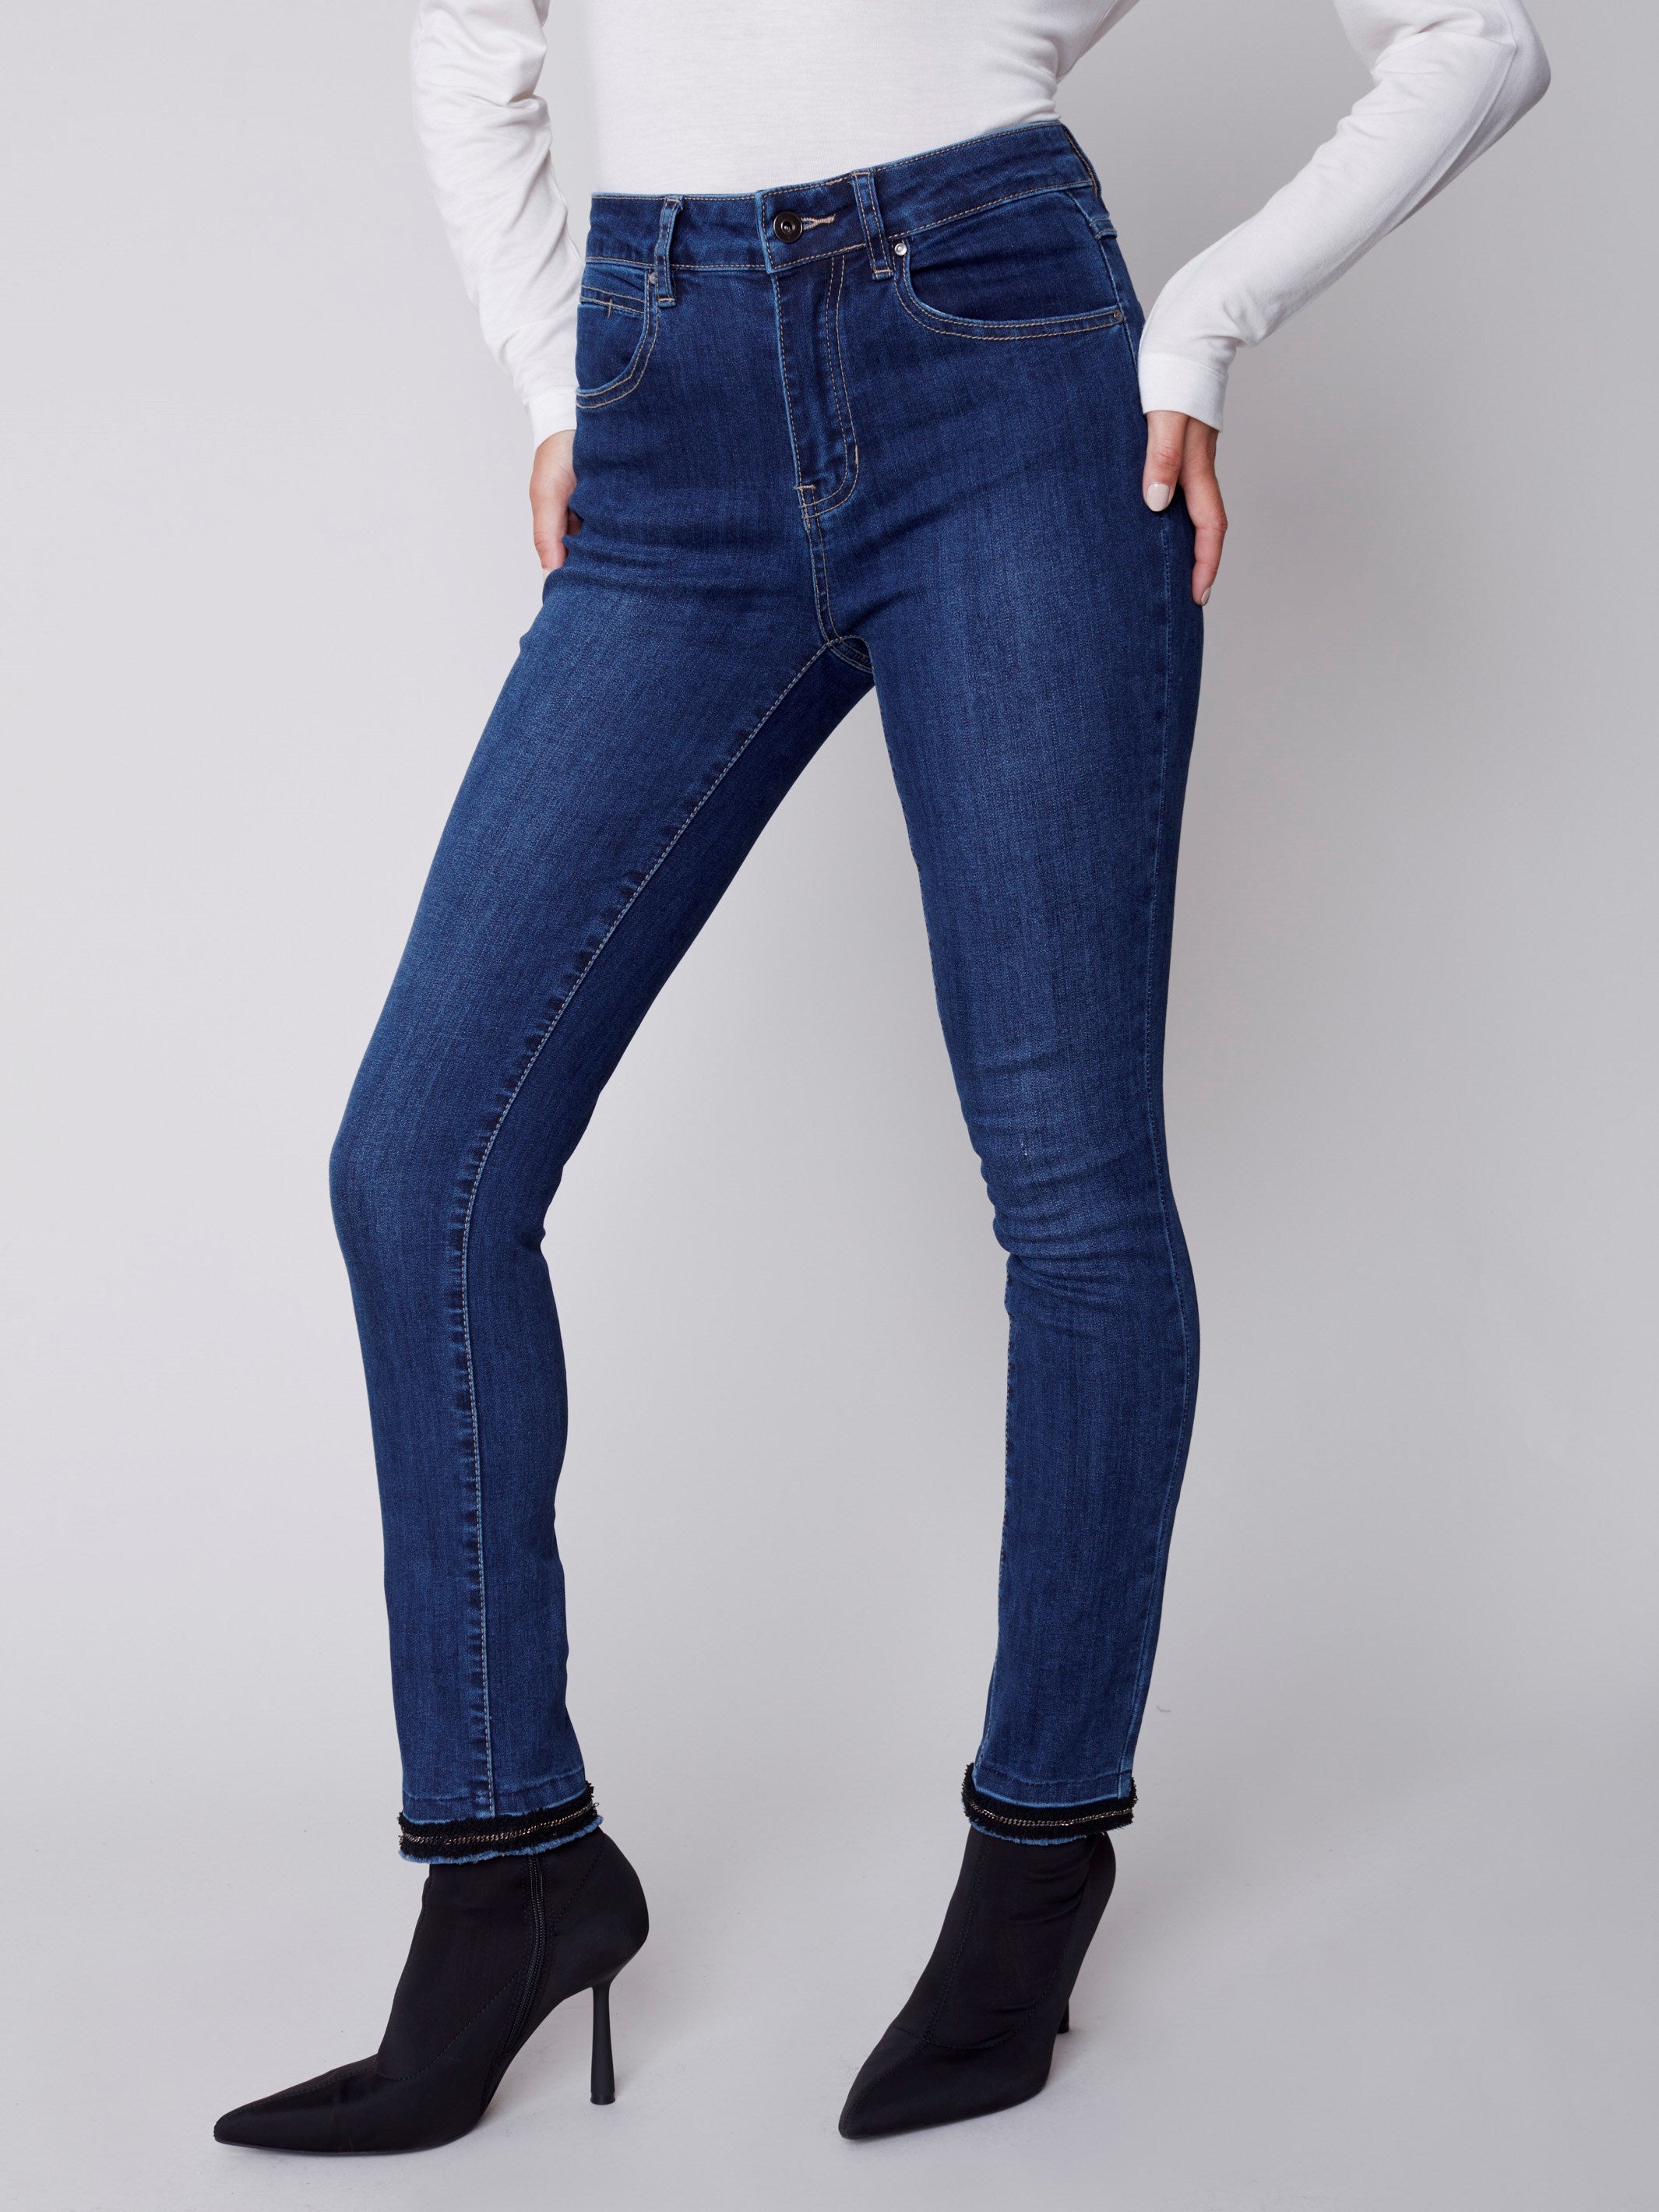 Skinny Jeans with Chain Hem - Indigo